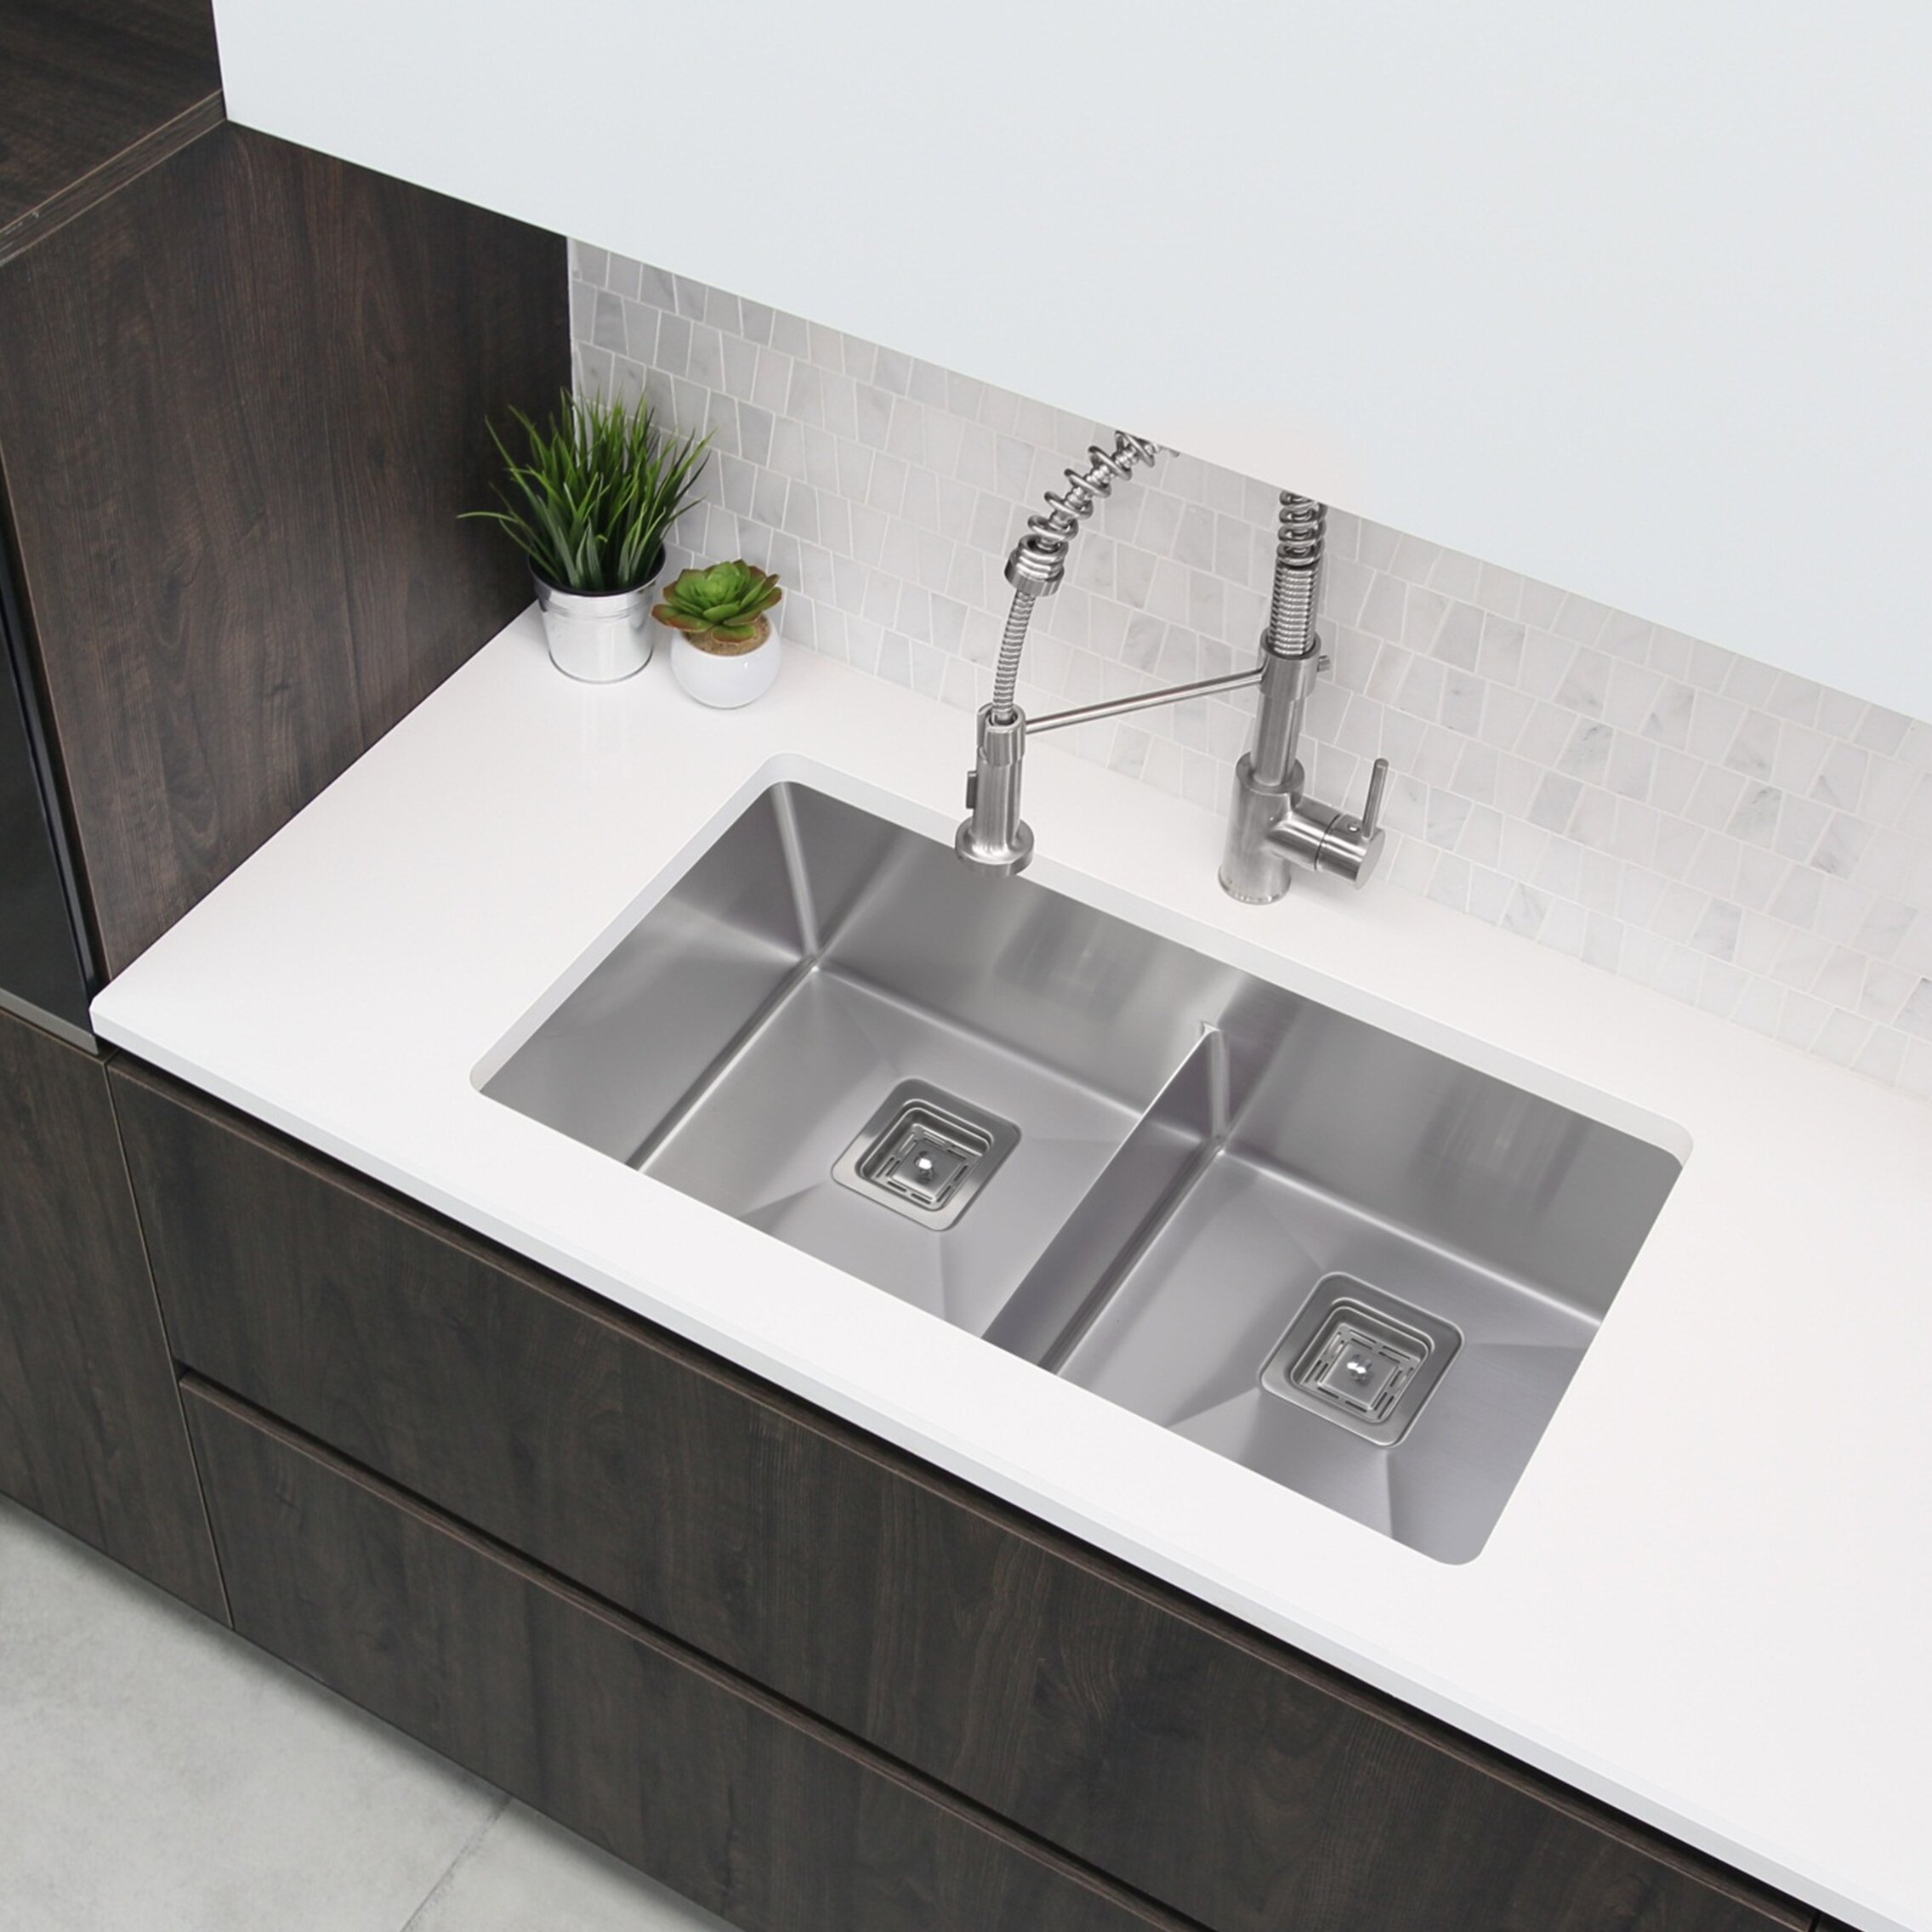 https://assets.wfcdn.com/im/61864845/compr-r85/8716/87163860/stylish-33-inch-slim-low-divider-double-bowl-undermount-kitchen-sink.jpg